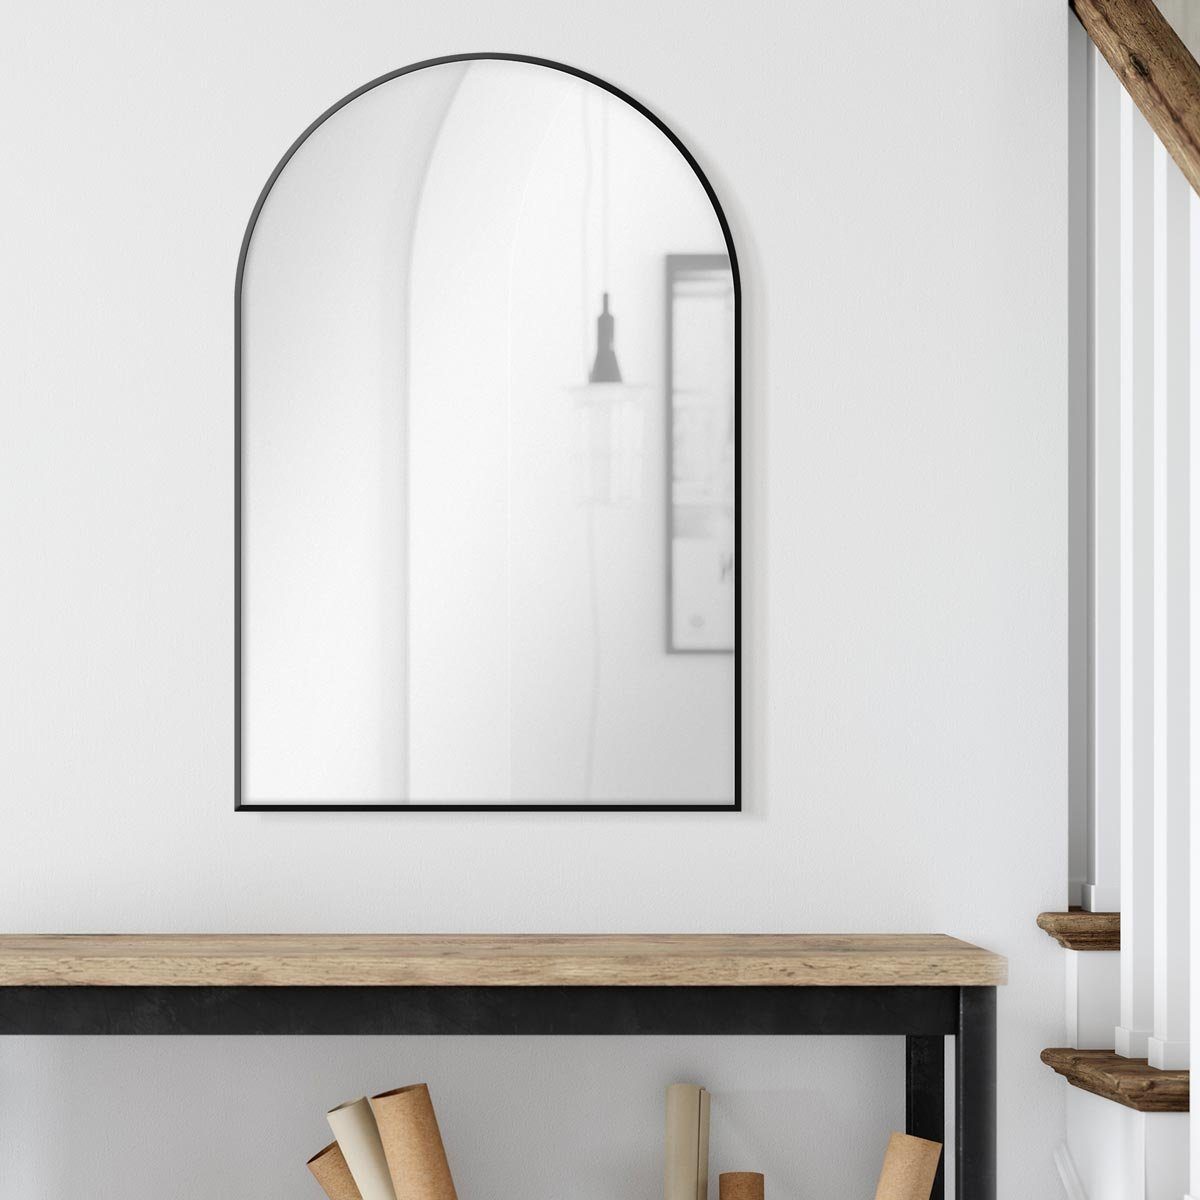 PHOTOLINI Spiegel mit Metallrahmen, Wandspiegel halbrund, schmaler Rahmen 50x75 cm Schwarz